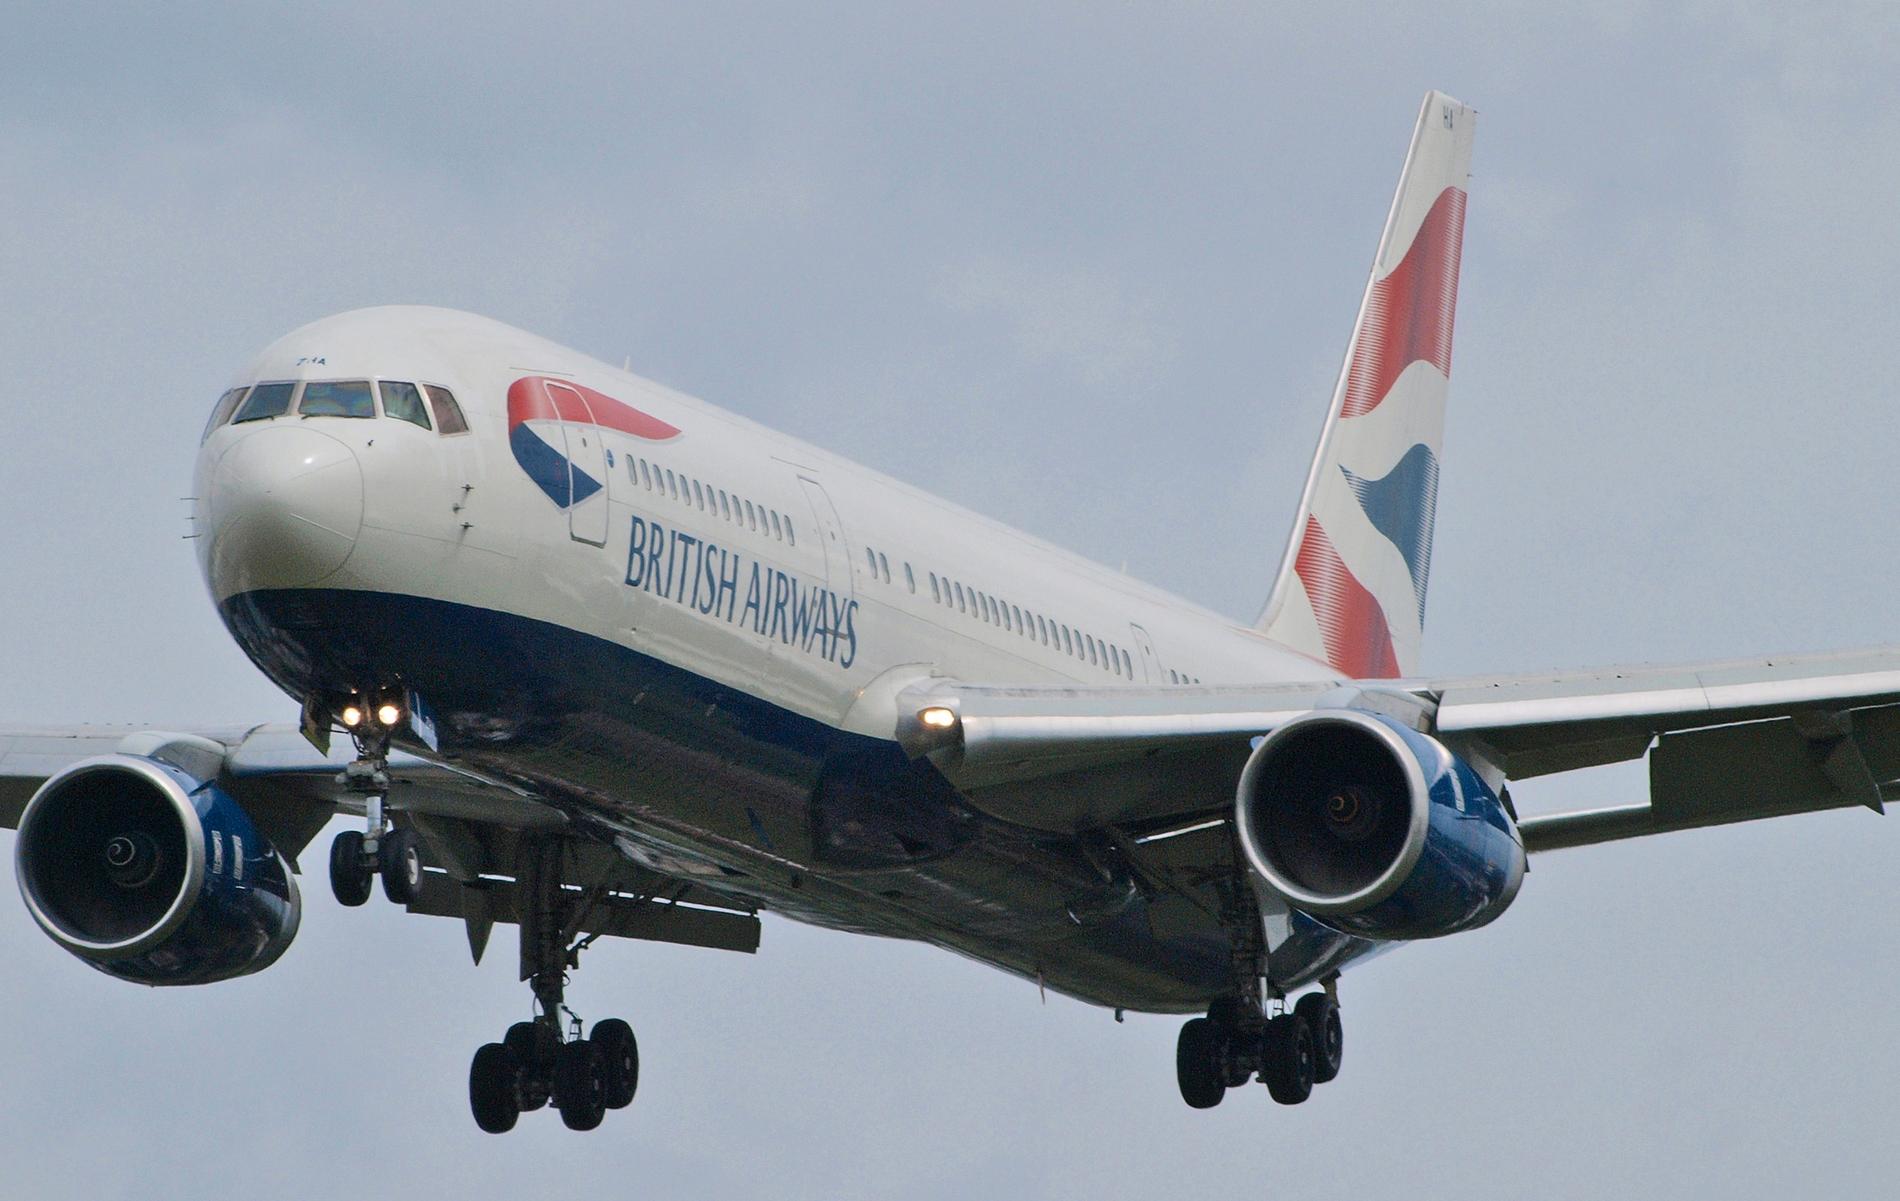 En fripasagerare föll mot döden från ett British Airways-plan (OBS. Planet på bilden har inget med artikeln att göra).